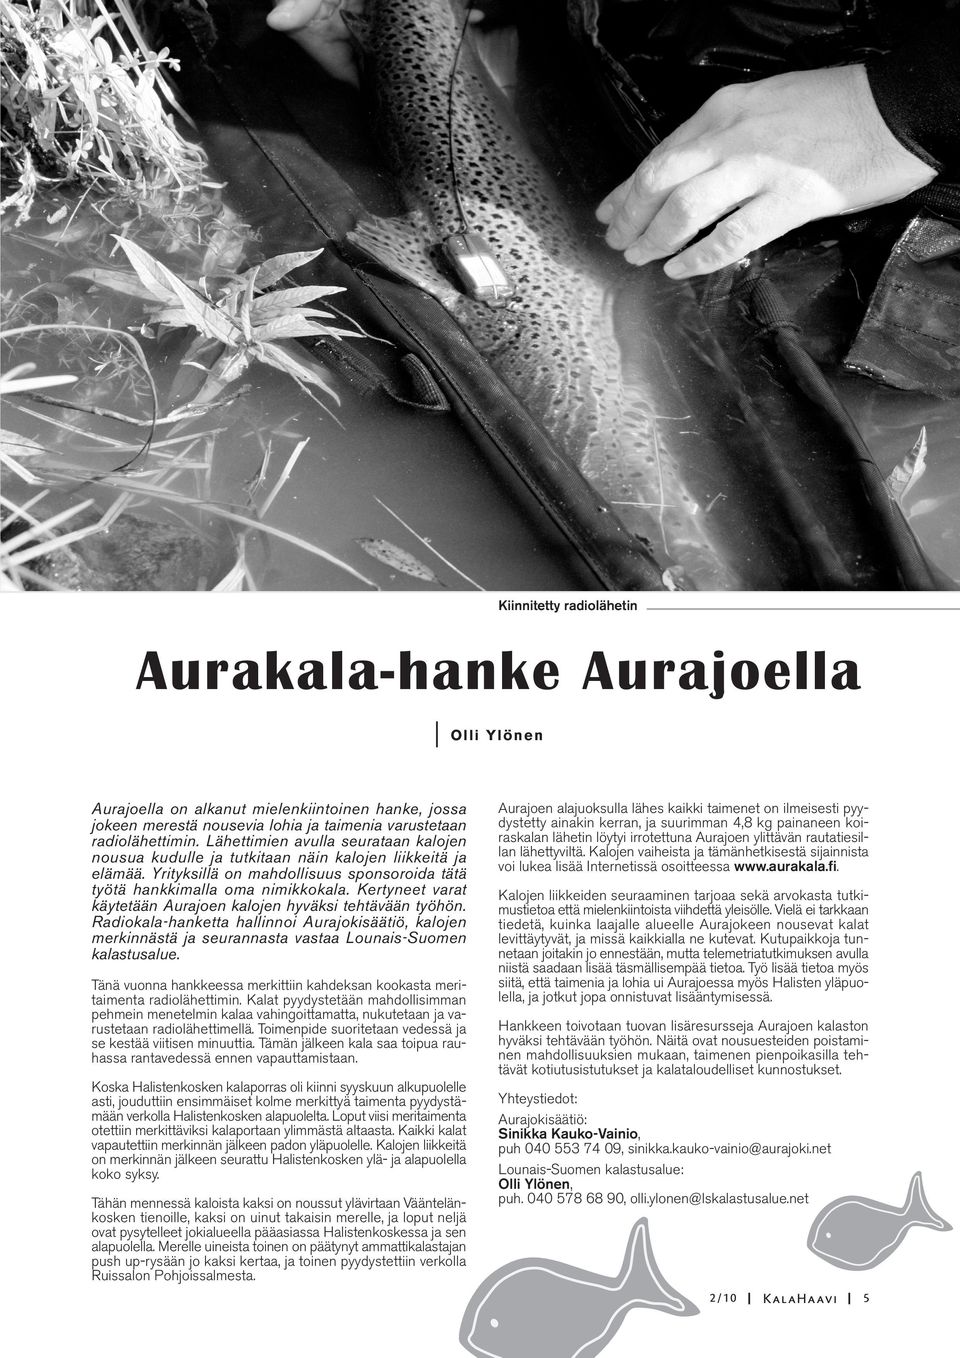 Kertyneet varat käytetään Aurajoen kalojen hyväksi tehtävään työhön. Radiokala-hanketta hallinnoi Aurajokisäätiö, kalojen merkinnästä ja seurannasta vastaa Lounais-Suomen kalastusalue.